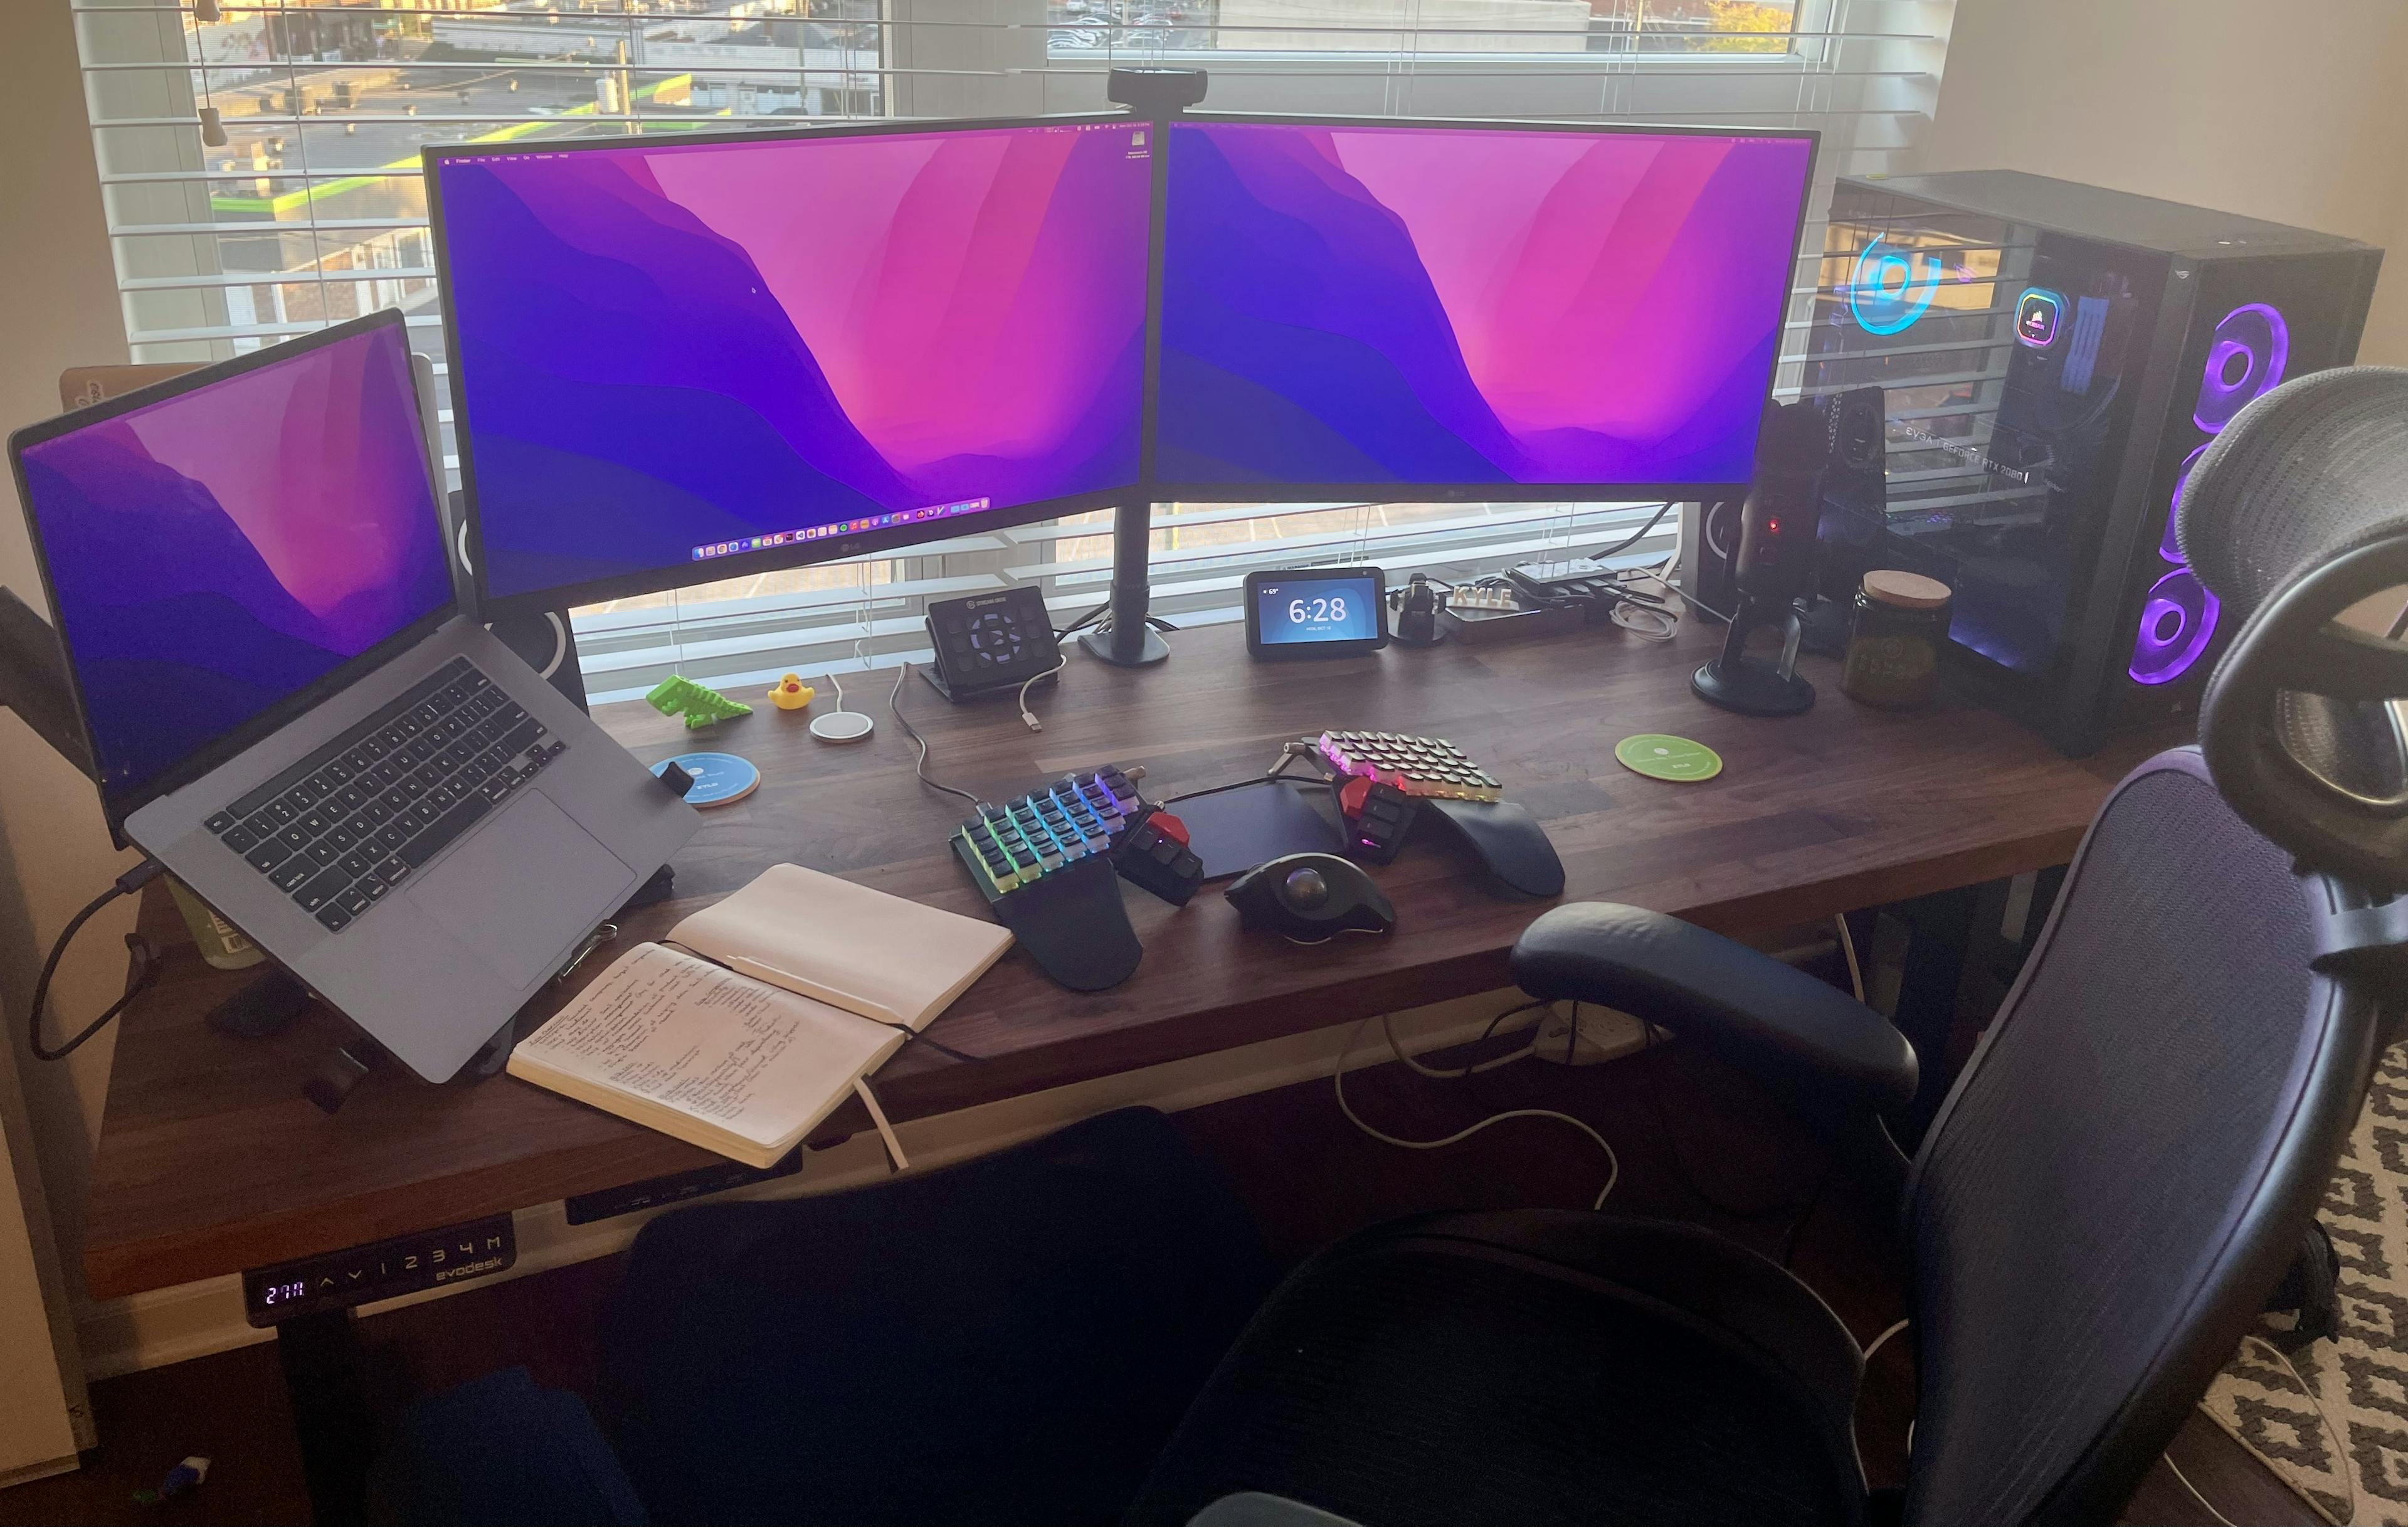 My desk setup!